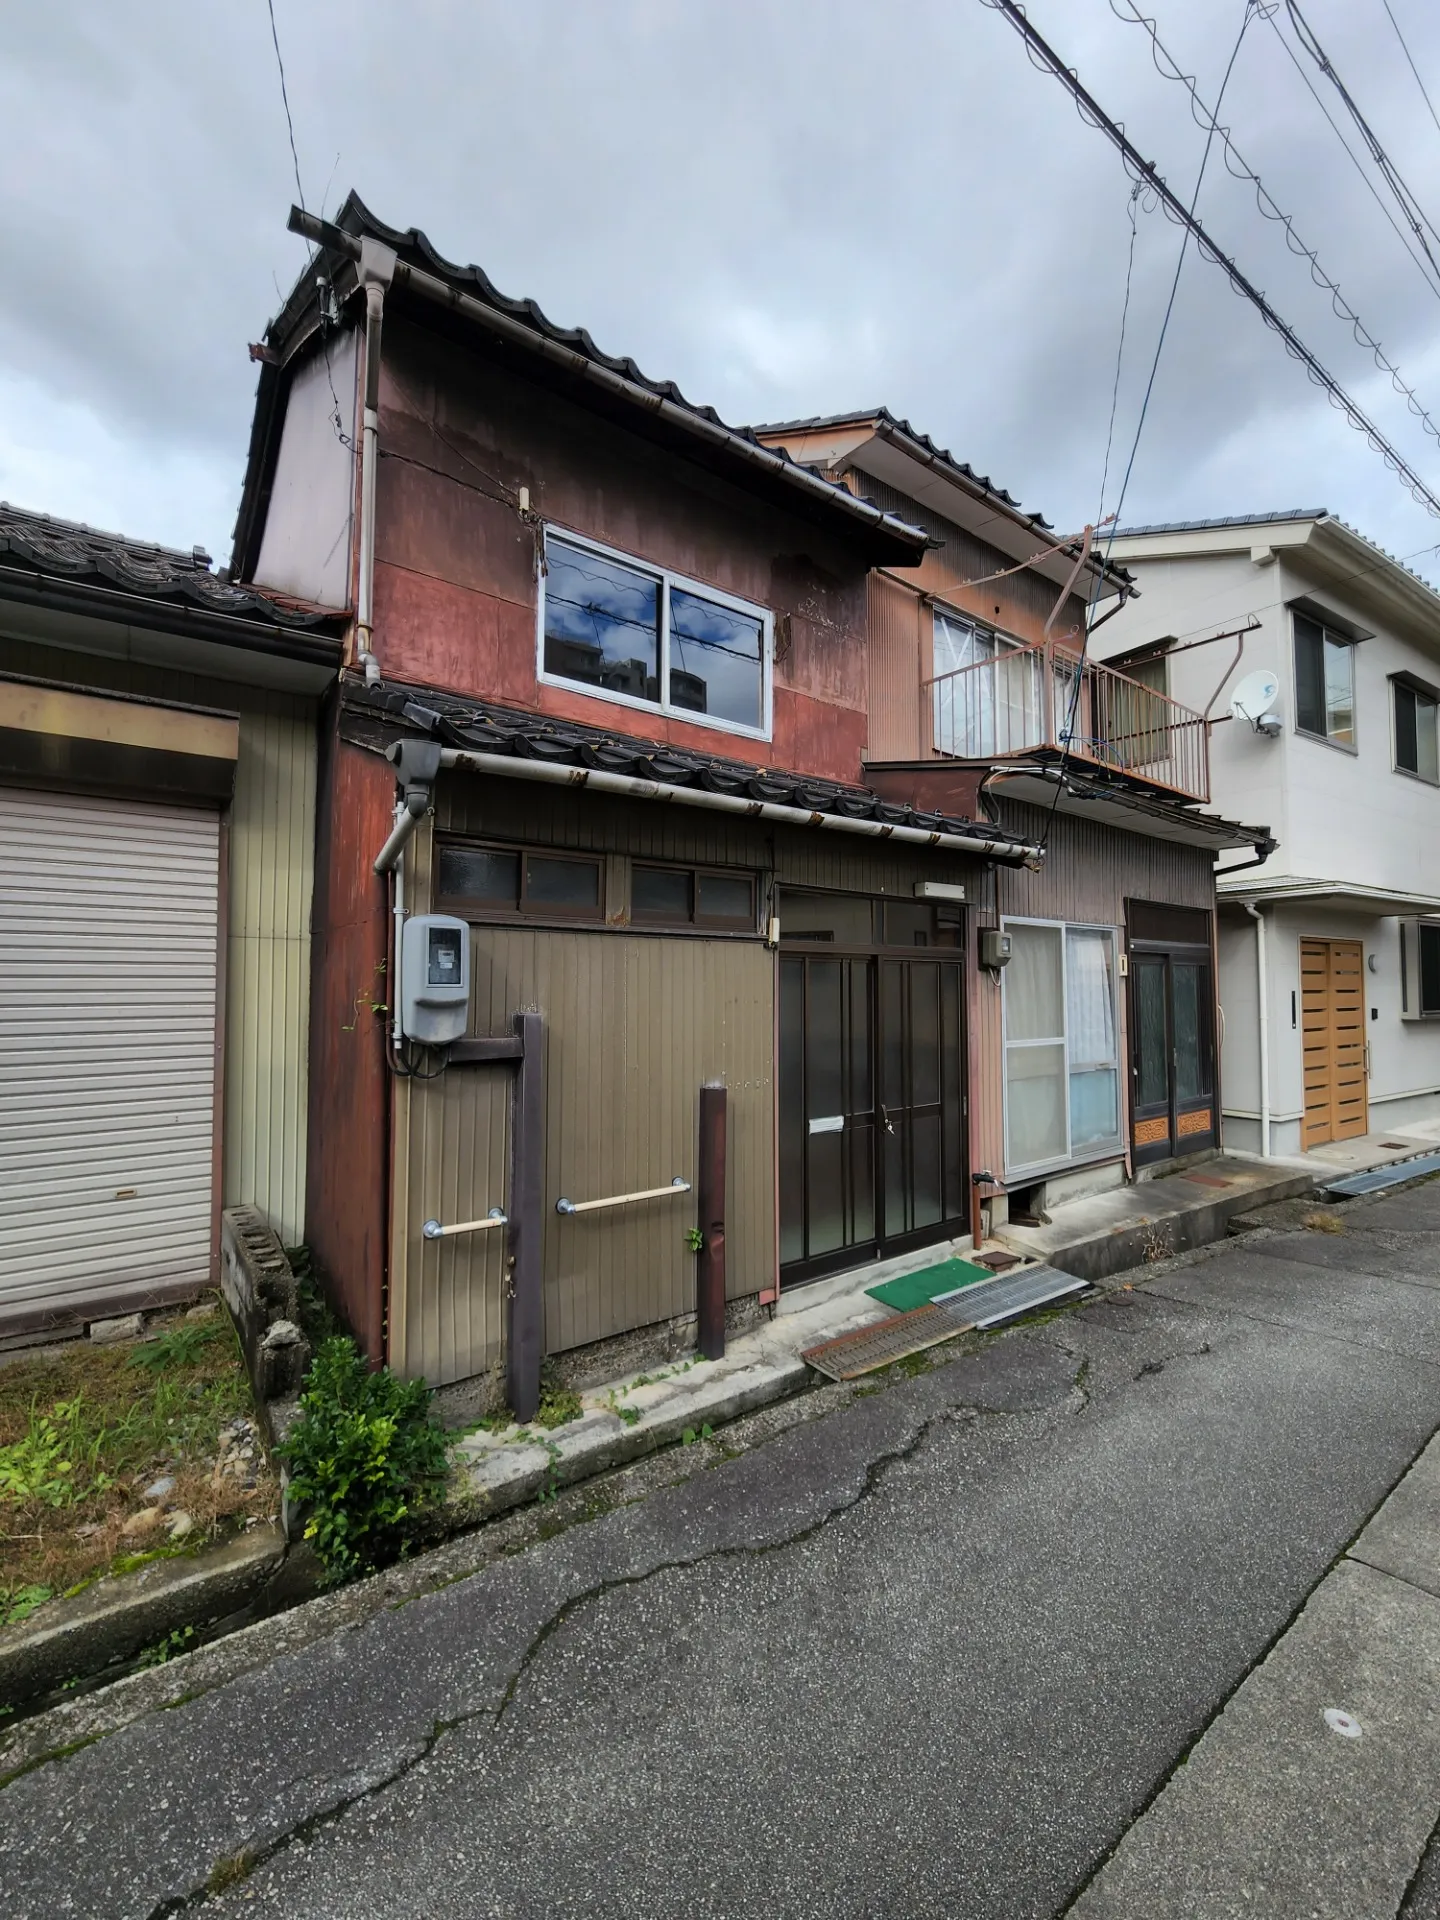 一戸建て<br>富山市今木町の長屋住宅（写真左側）